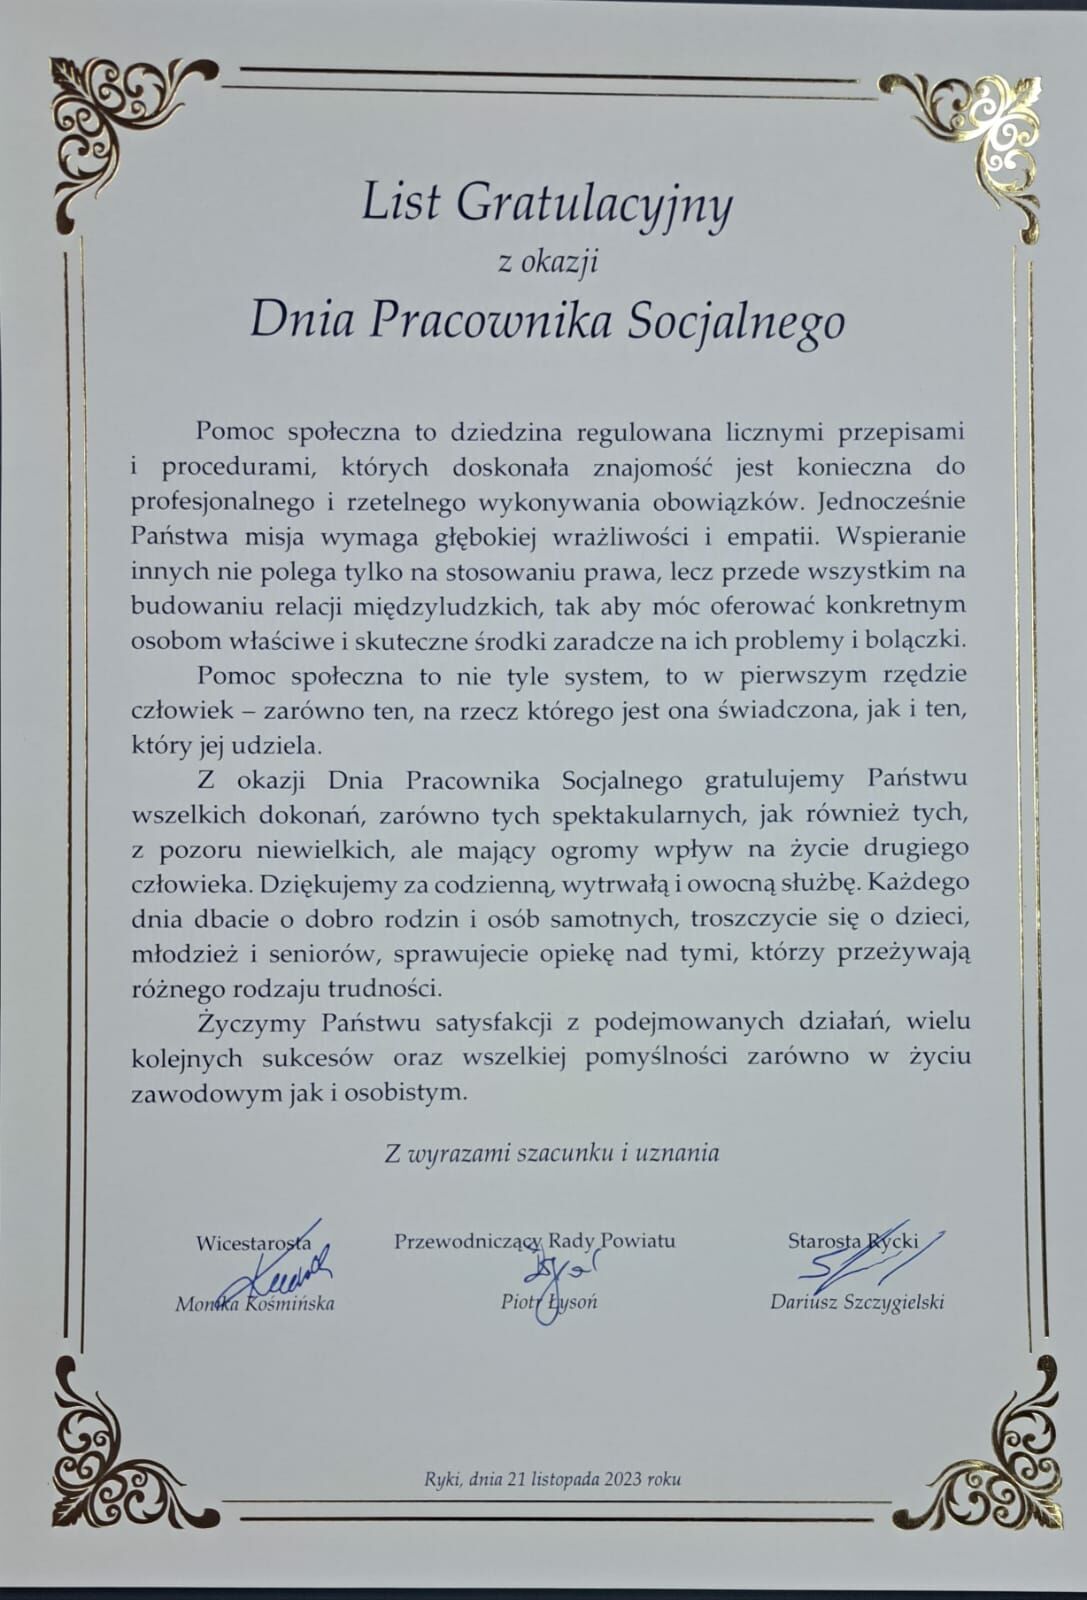 Zdjęcie przedstawia elegancki list gratulacyjny z ramką w ornamenty, wystawiony przez Dyrektora oraz Przewodniczącego Rady i Starostę Powiatu z okazji Dnia Pracownika Socjalnego.